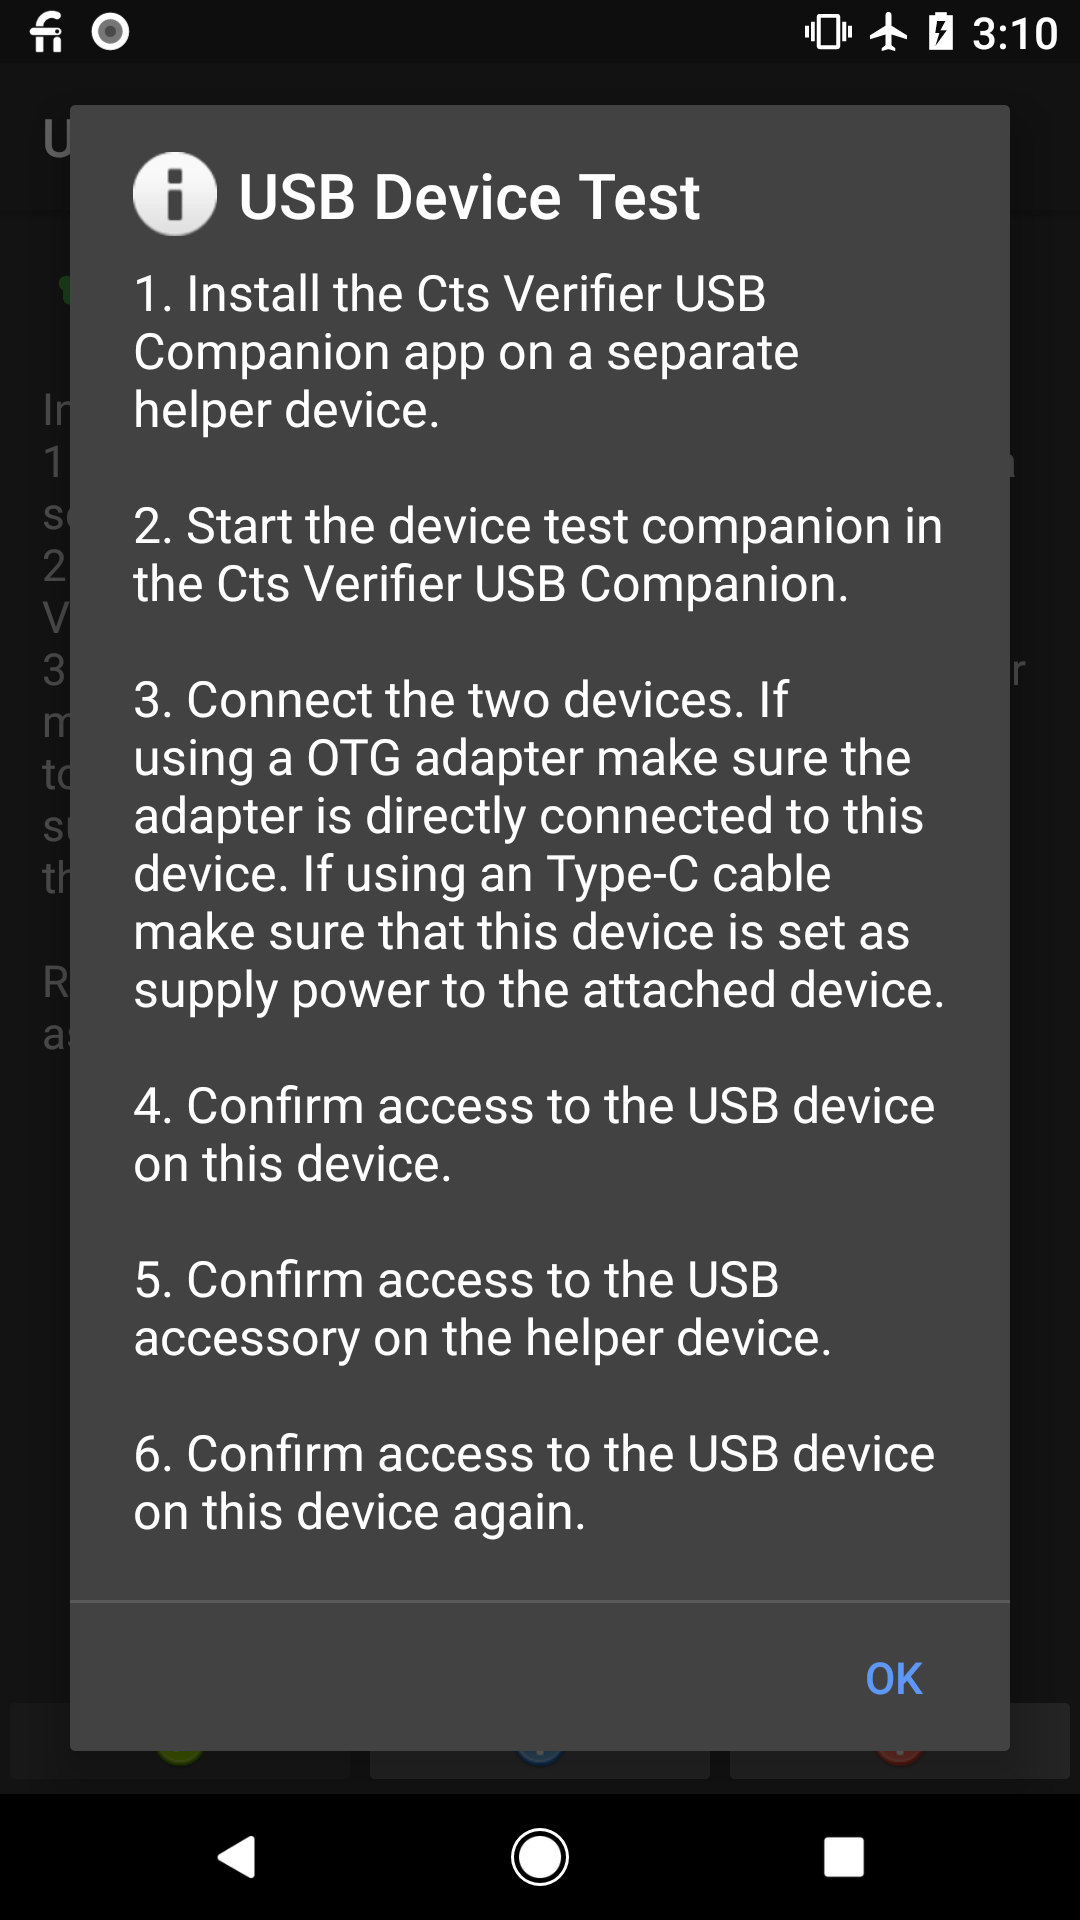 USB device test